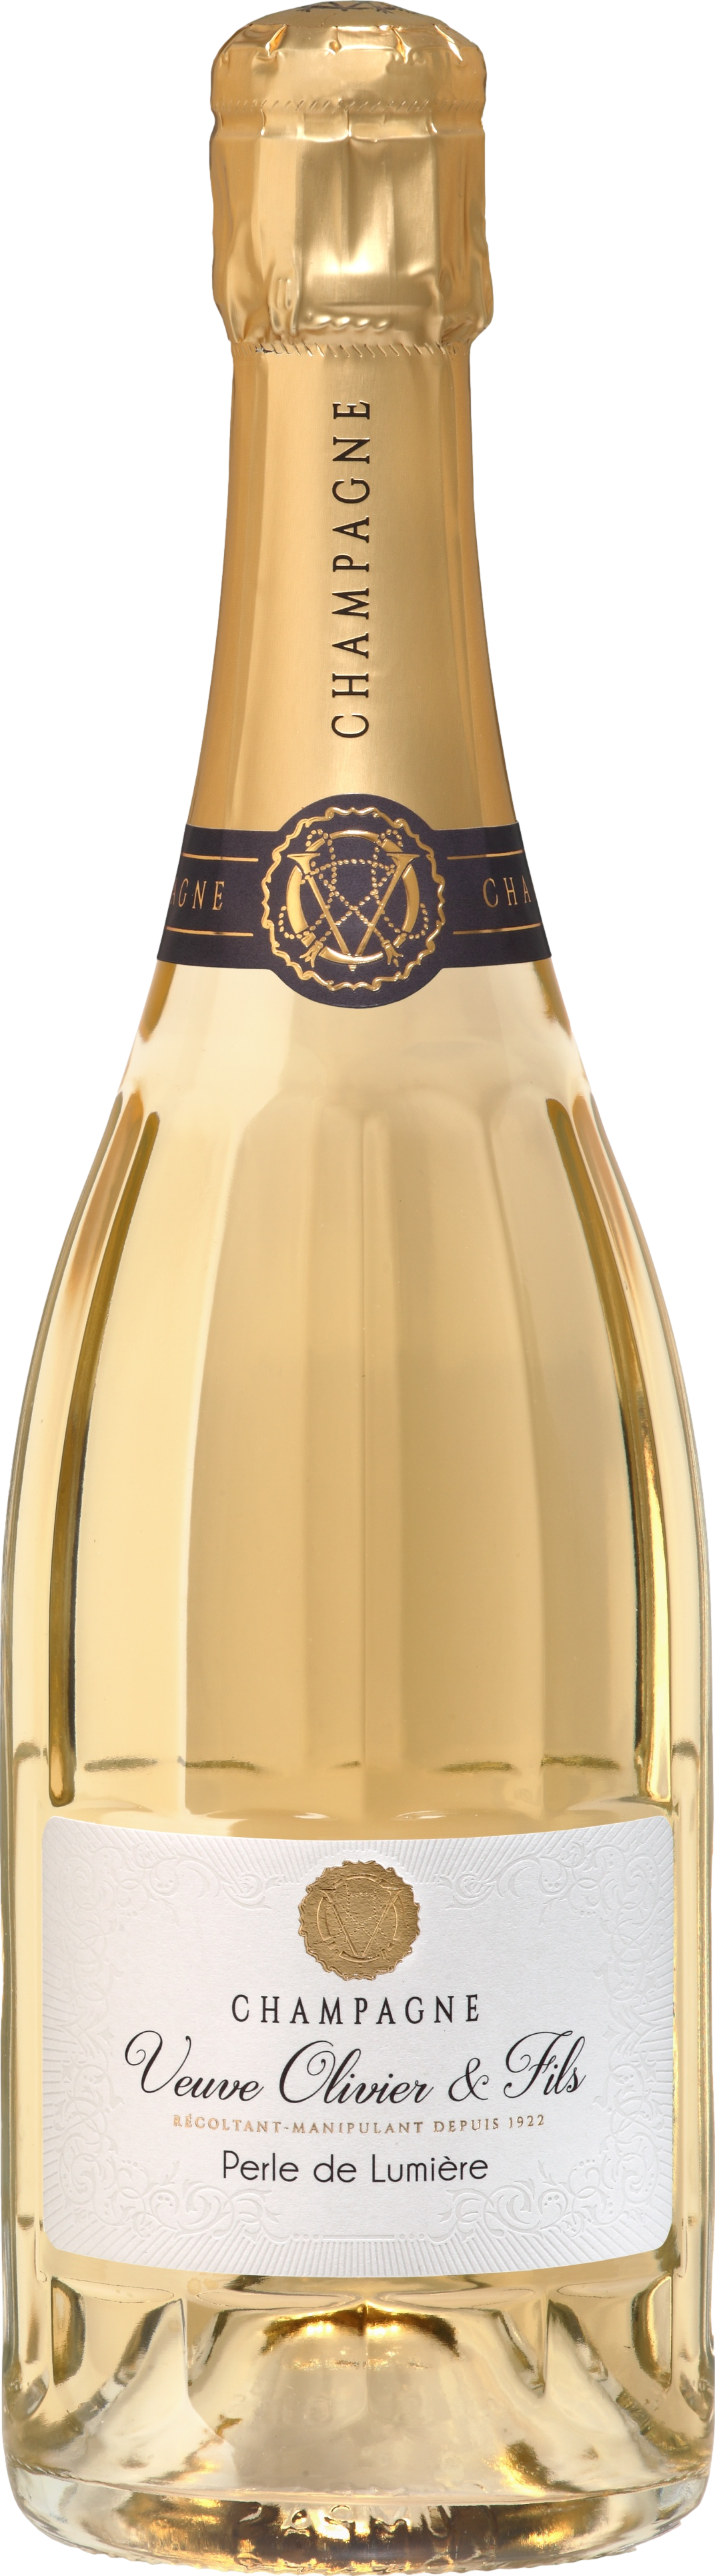 Champagne Veuve Olivier а Fils Perle de Lumiere Brut Šumivé 12.0% 0.75 l